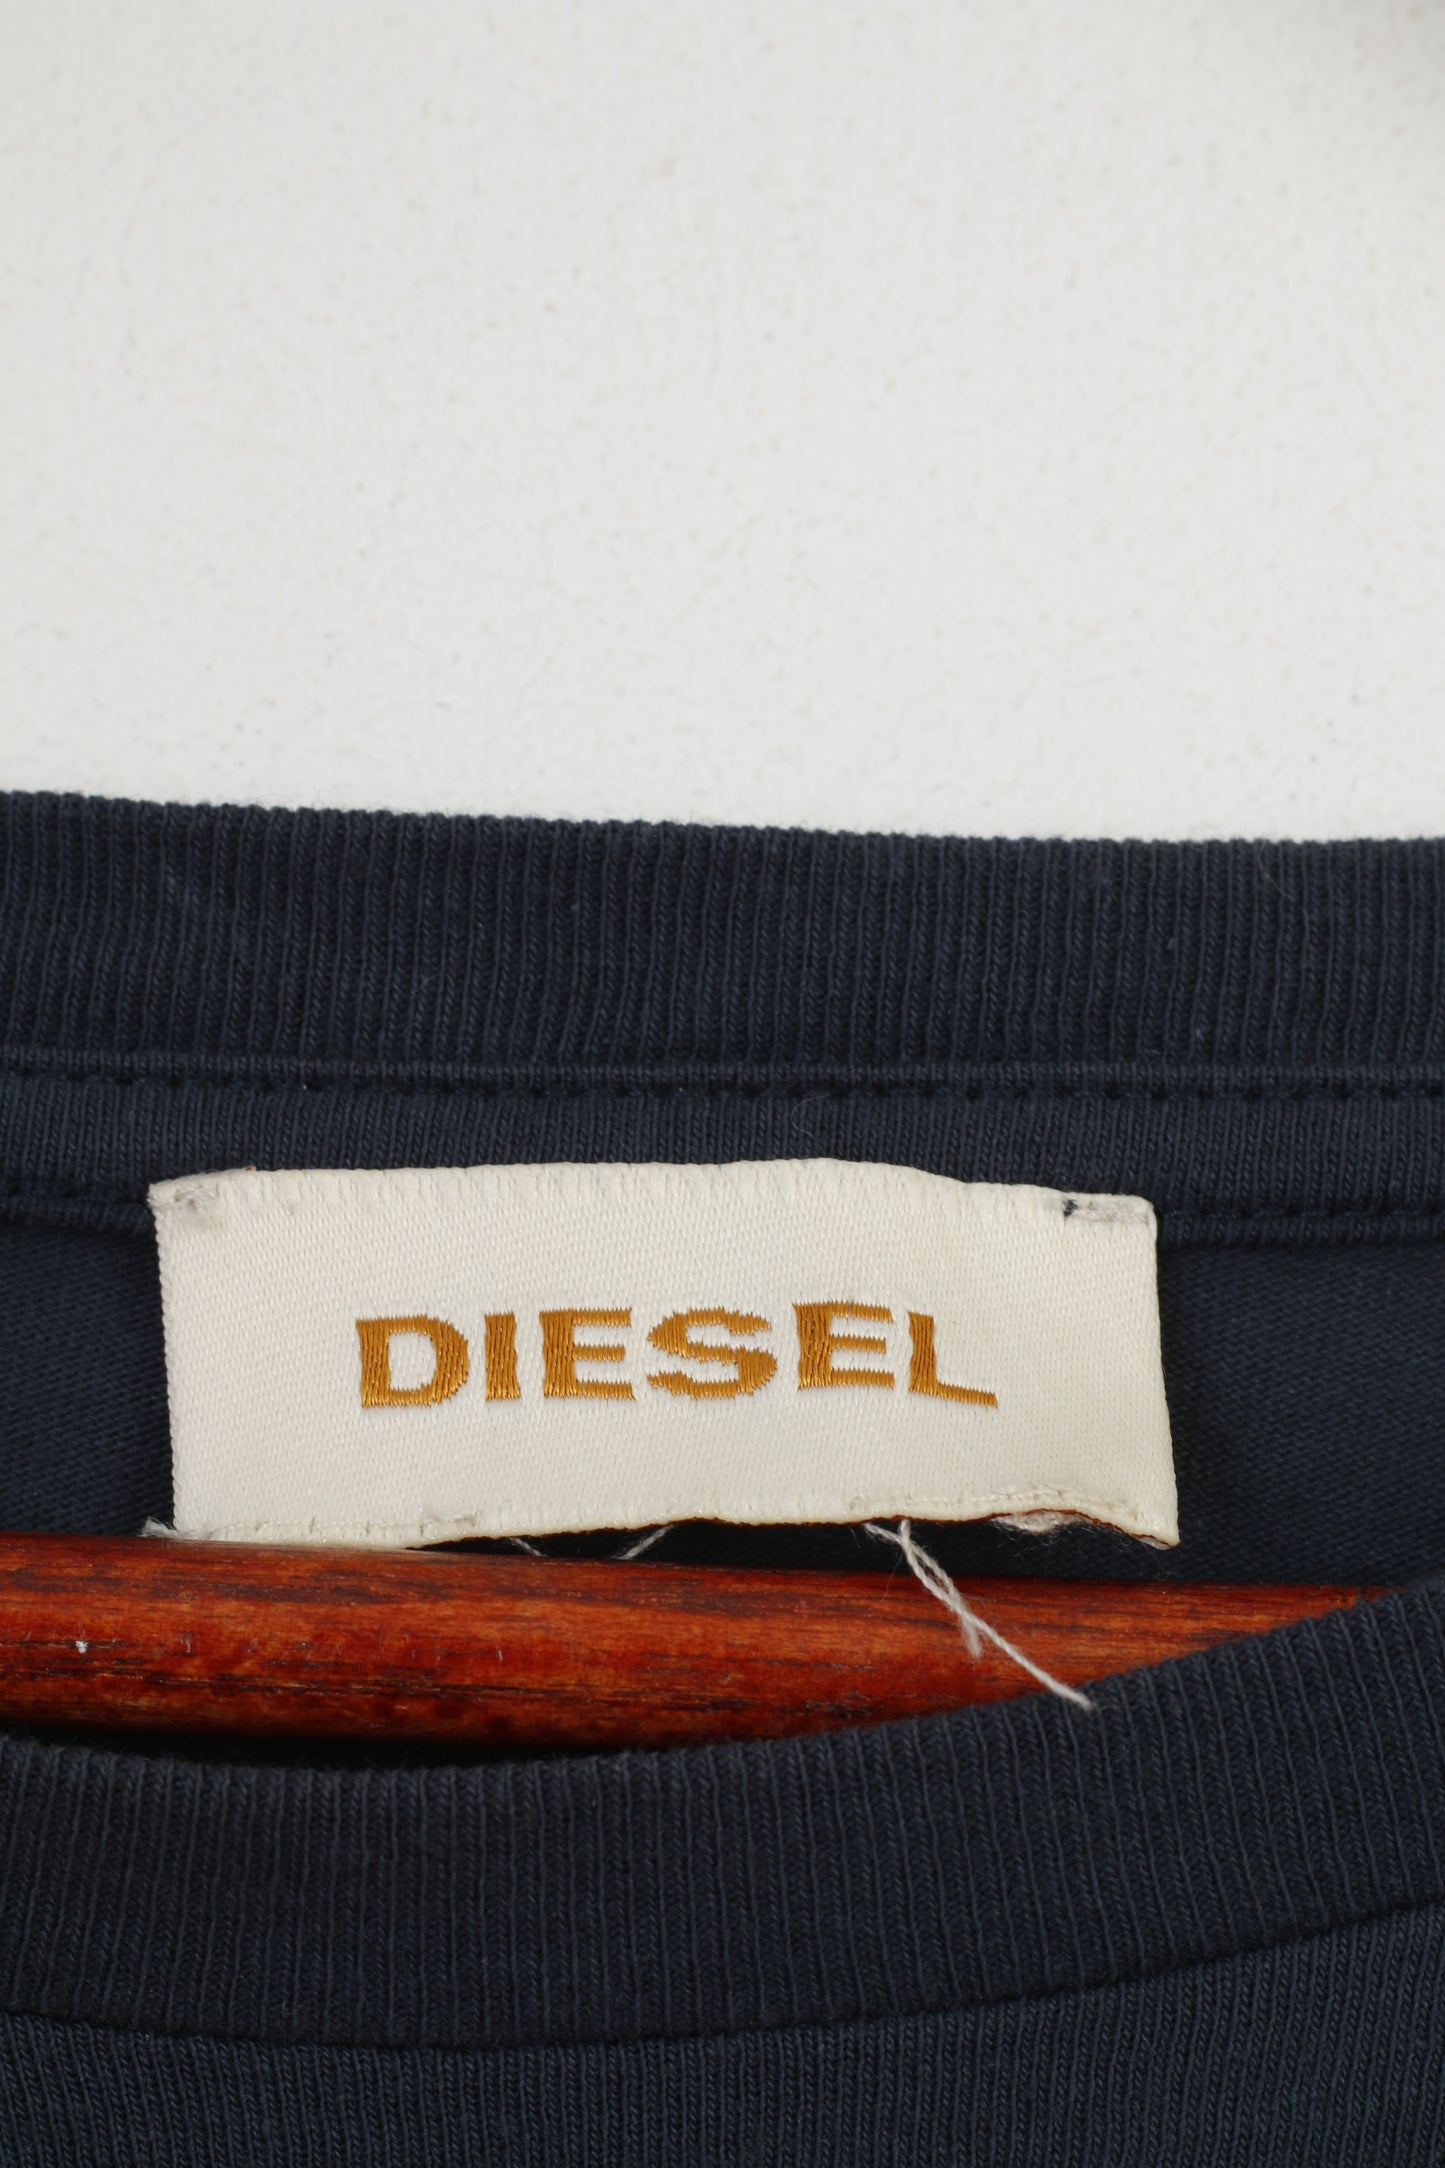 Diesel Men M T-Shirt Navy Cotton Crew Neck Stretch Vintage Logo Short Sleeve Top